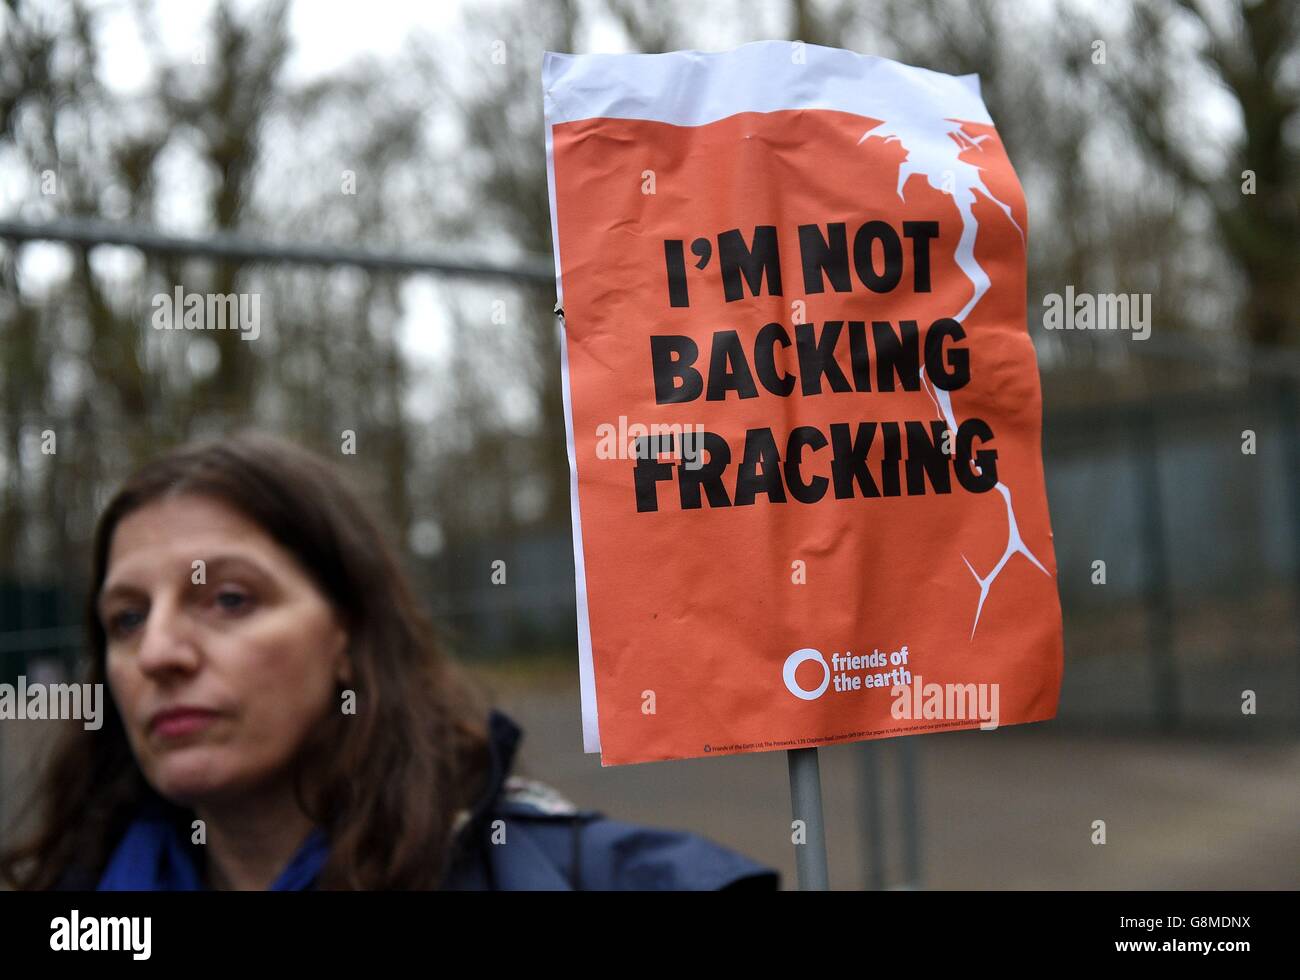 Joanne dove, 49 da Rudgwick protesta fuori del sito Horse Hill Developments in Surrey, dove il Regno Unito petrolio e gas stanno effettuando un test di flusso per il petrolio. Foto Stock